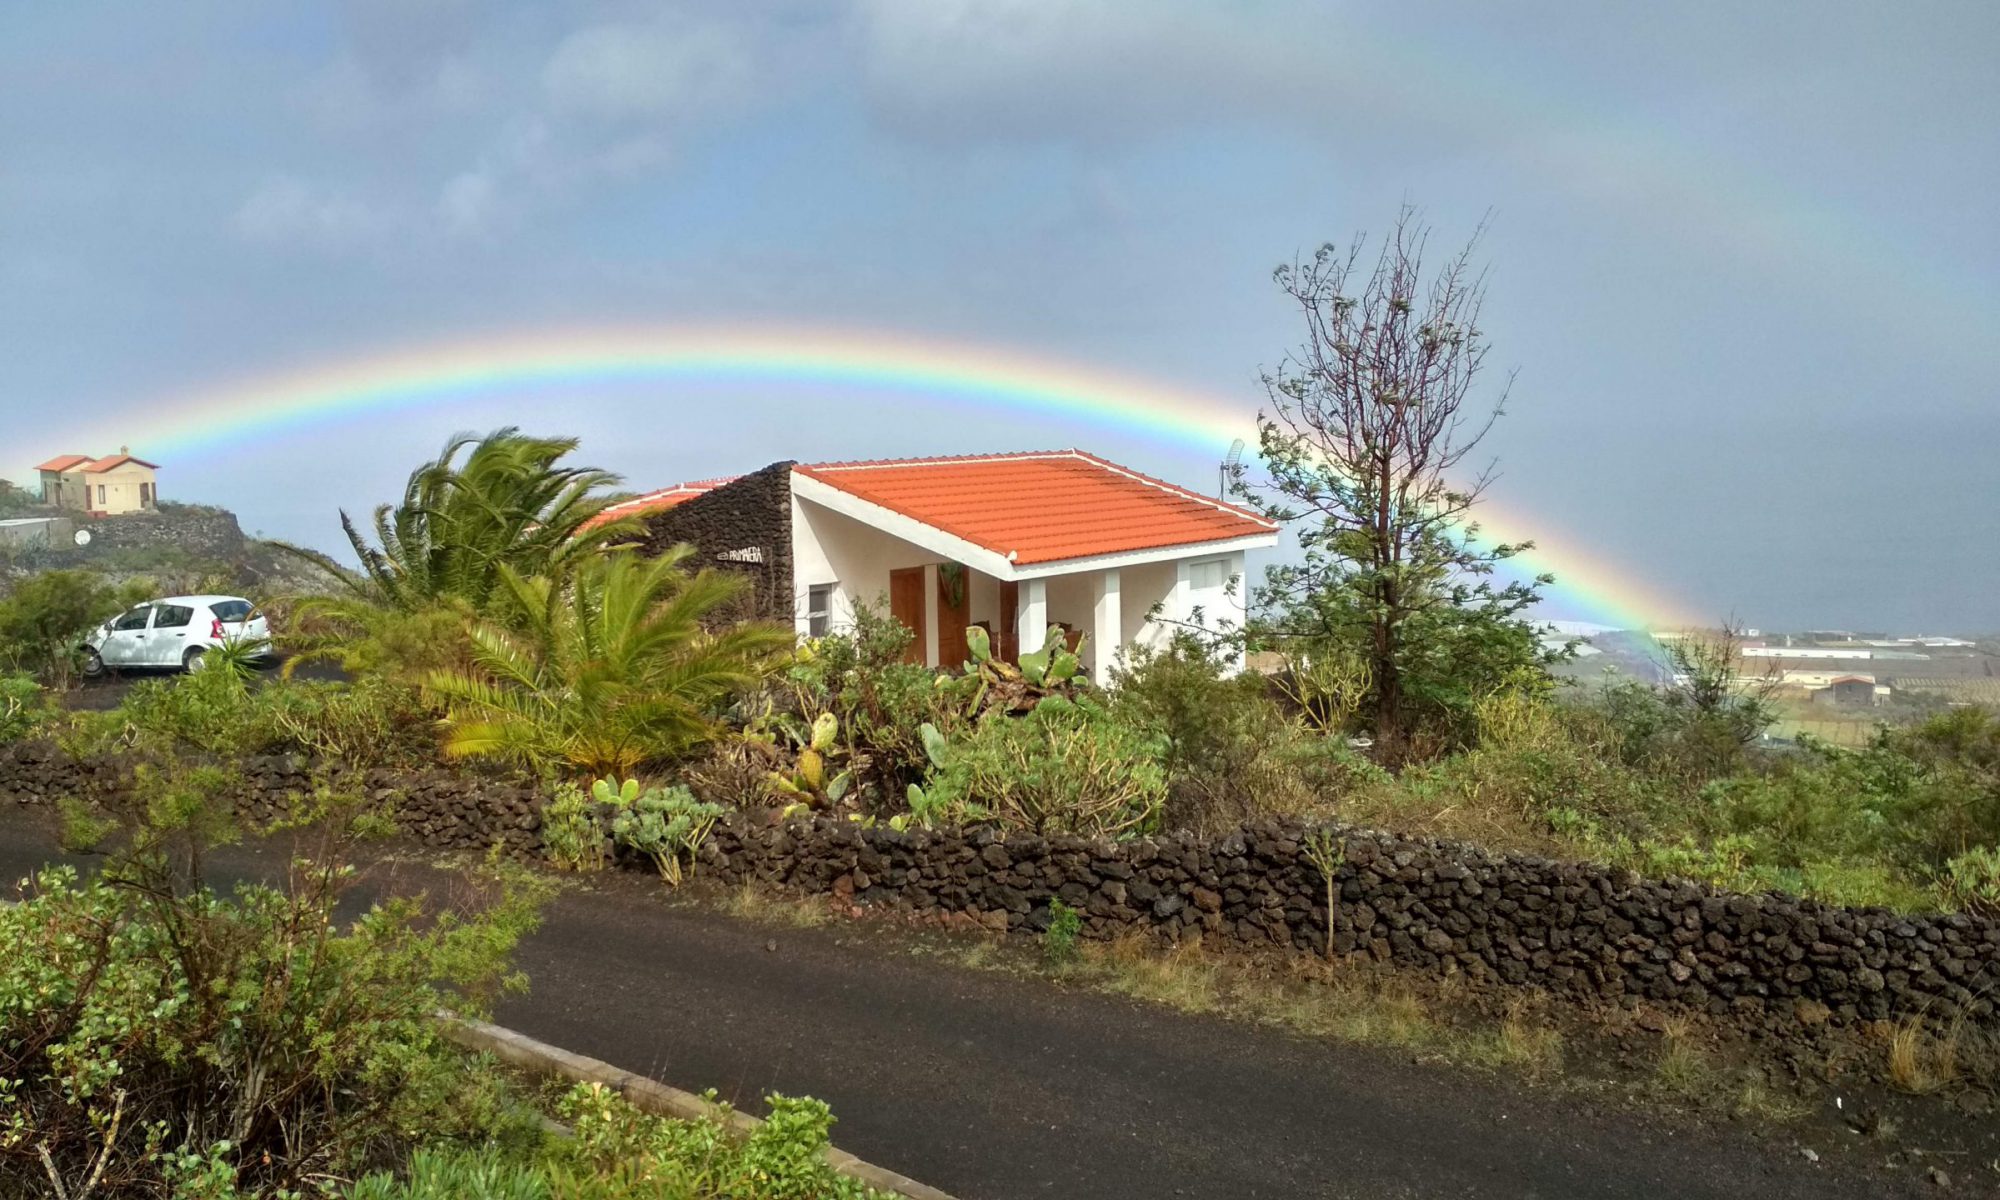 Imagen de Casa Primavera bajo arcoiris